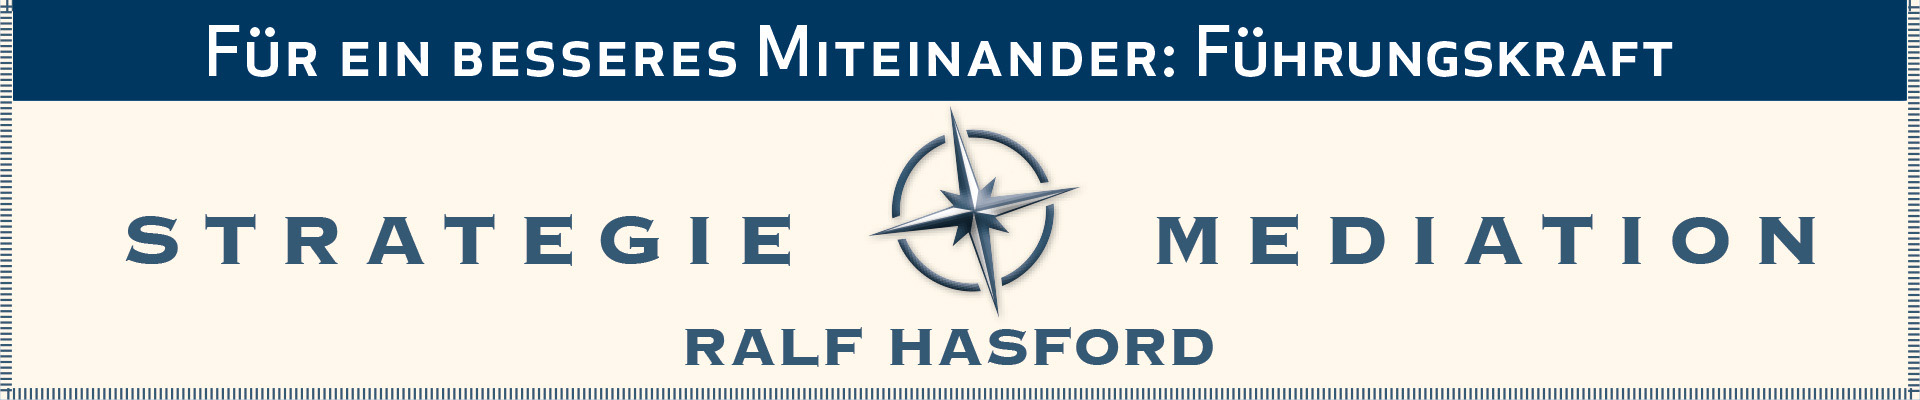 Ralf Hasford ist Moderator und Mediator.  Für ein besseres Miteinander. Zusammenarbeit und Konfliktbewältigung durch Strategieentwicklung und Konflikt-Mediation in Organisationen.